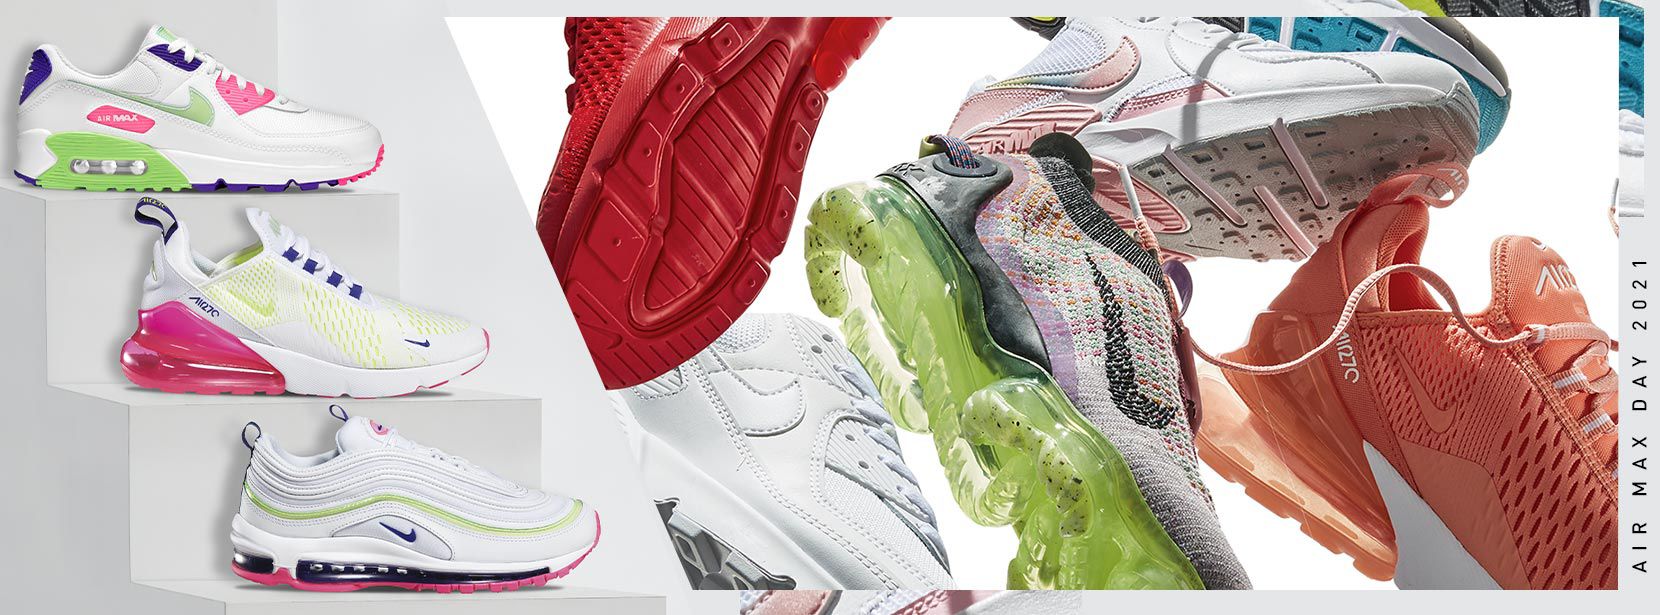 Nike Air Max Shop | DICK'S Sporting Goods